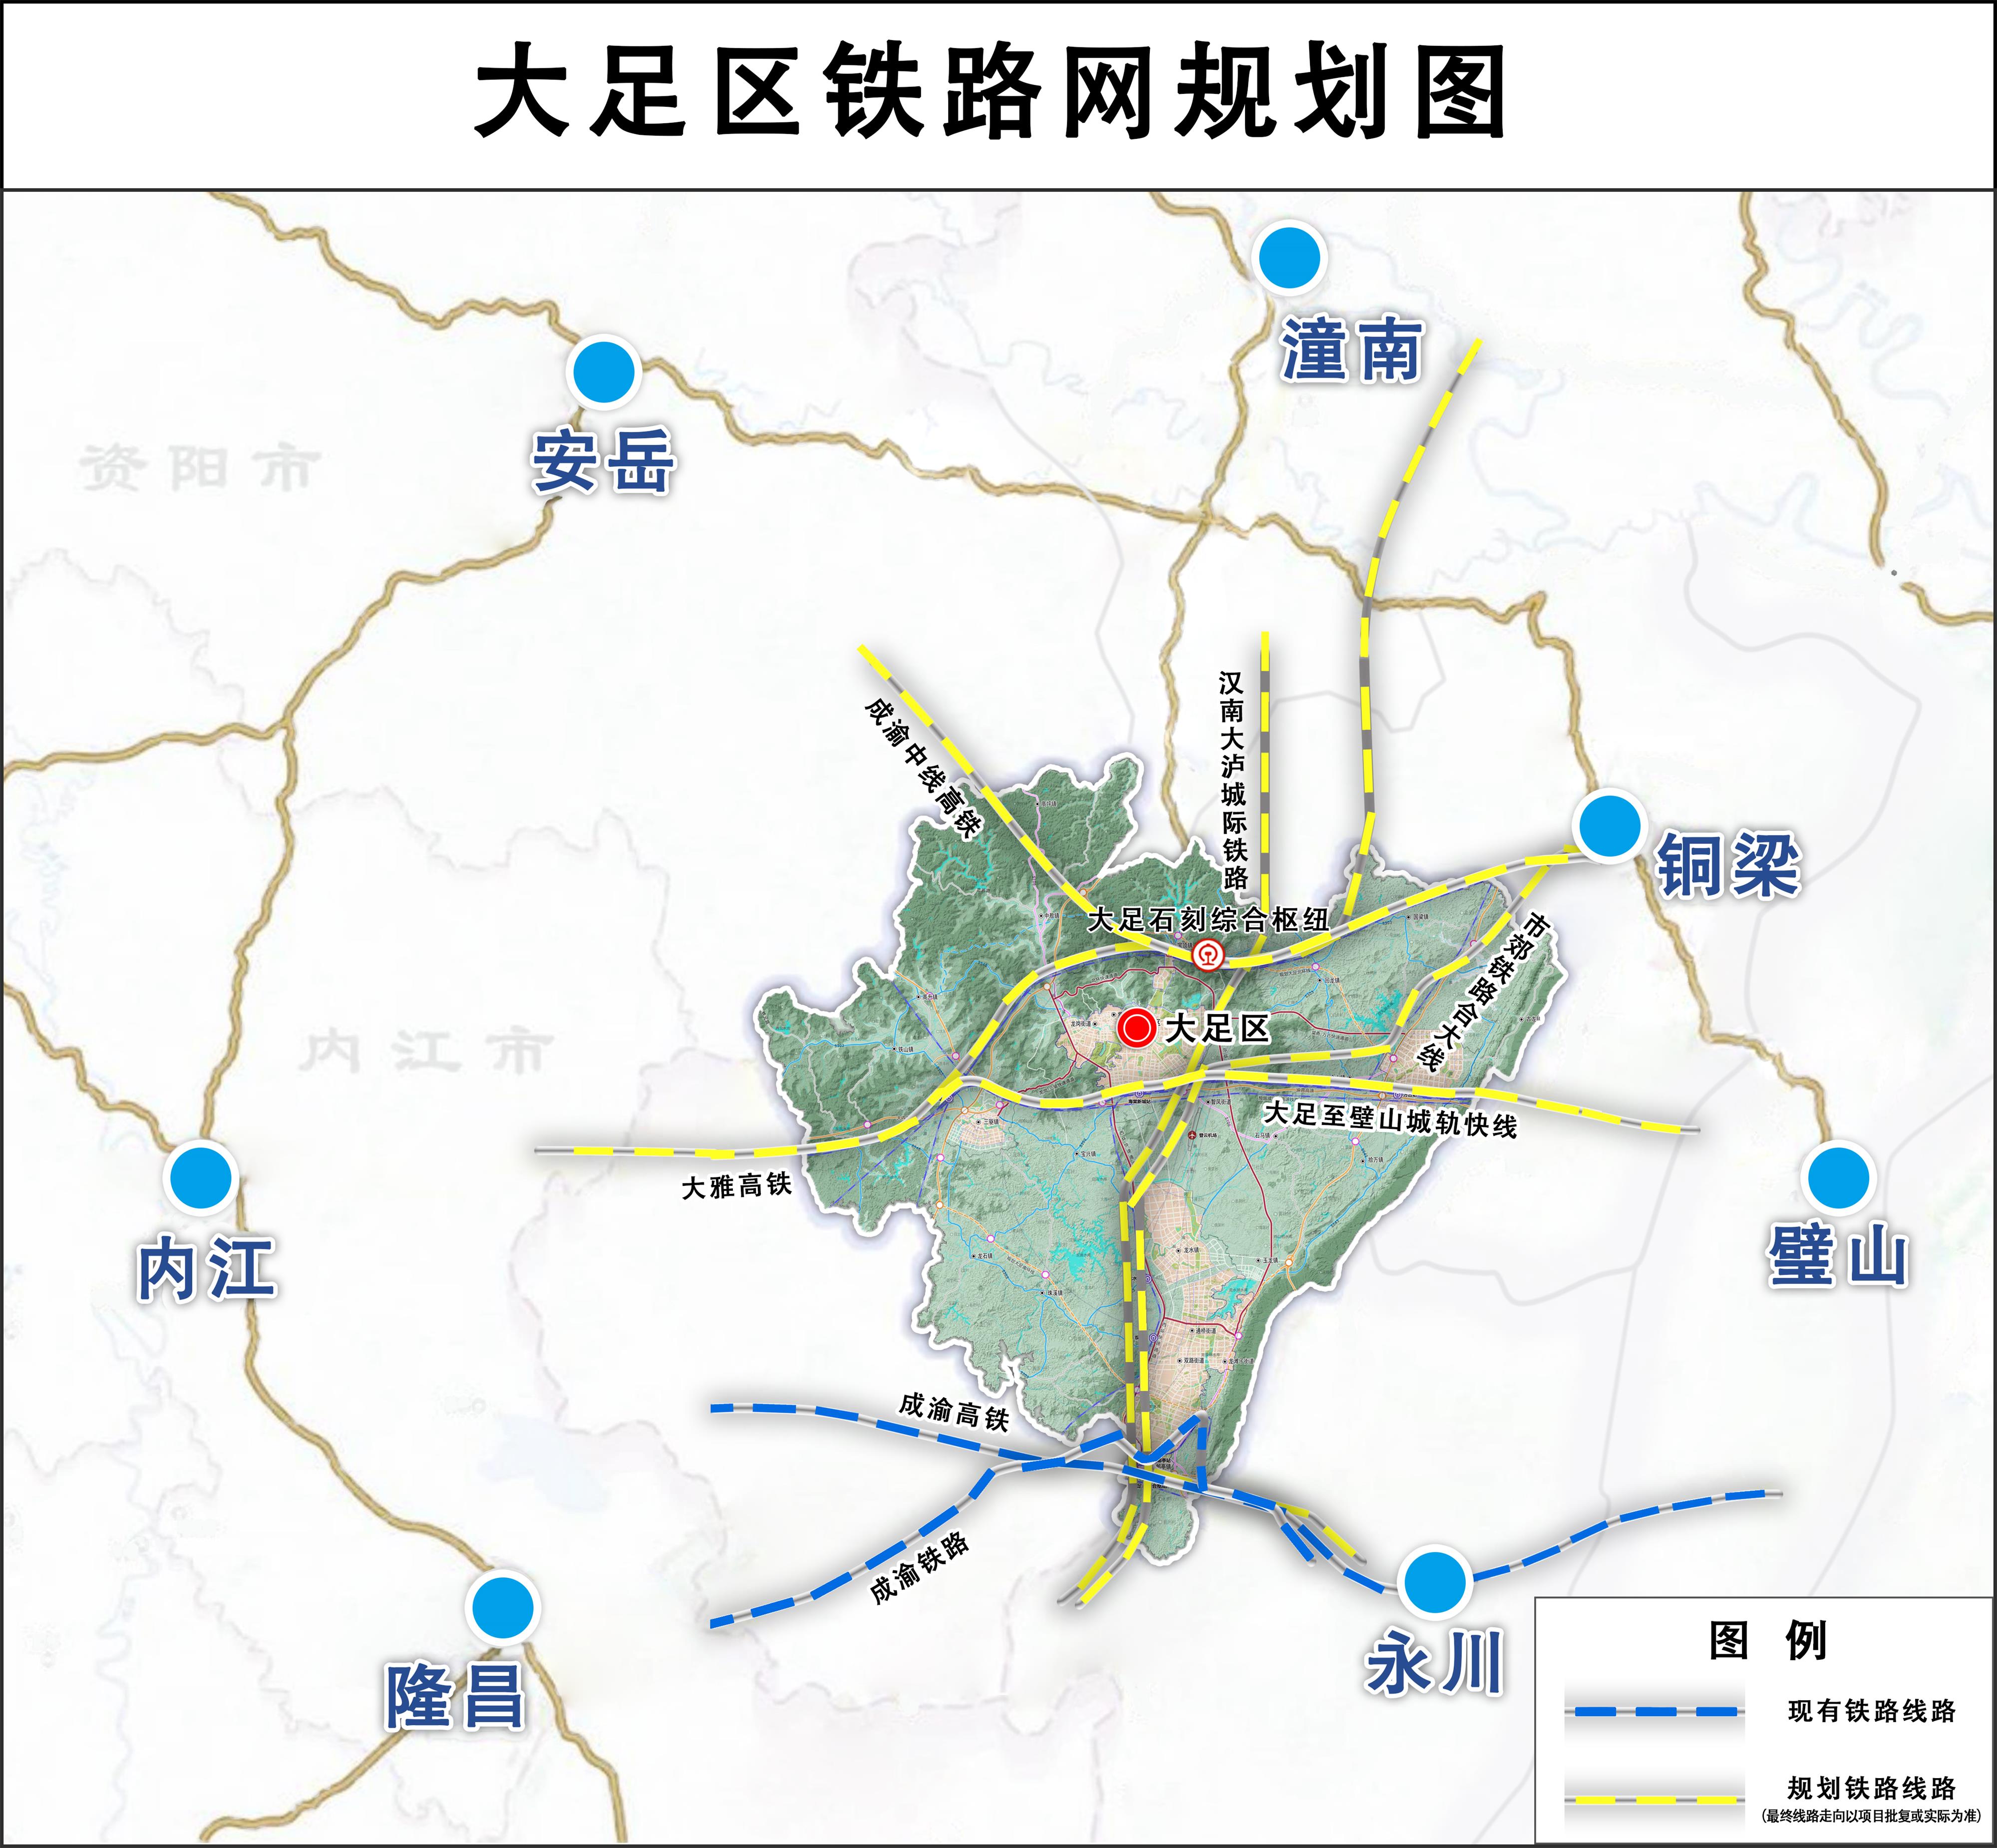 成渝地区双城经济圈内部互联互通再加强 今天14时三条高速公路同时通车 - 重庆日报